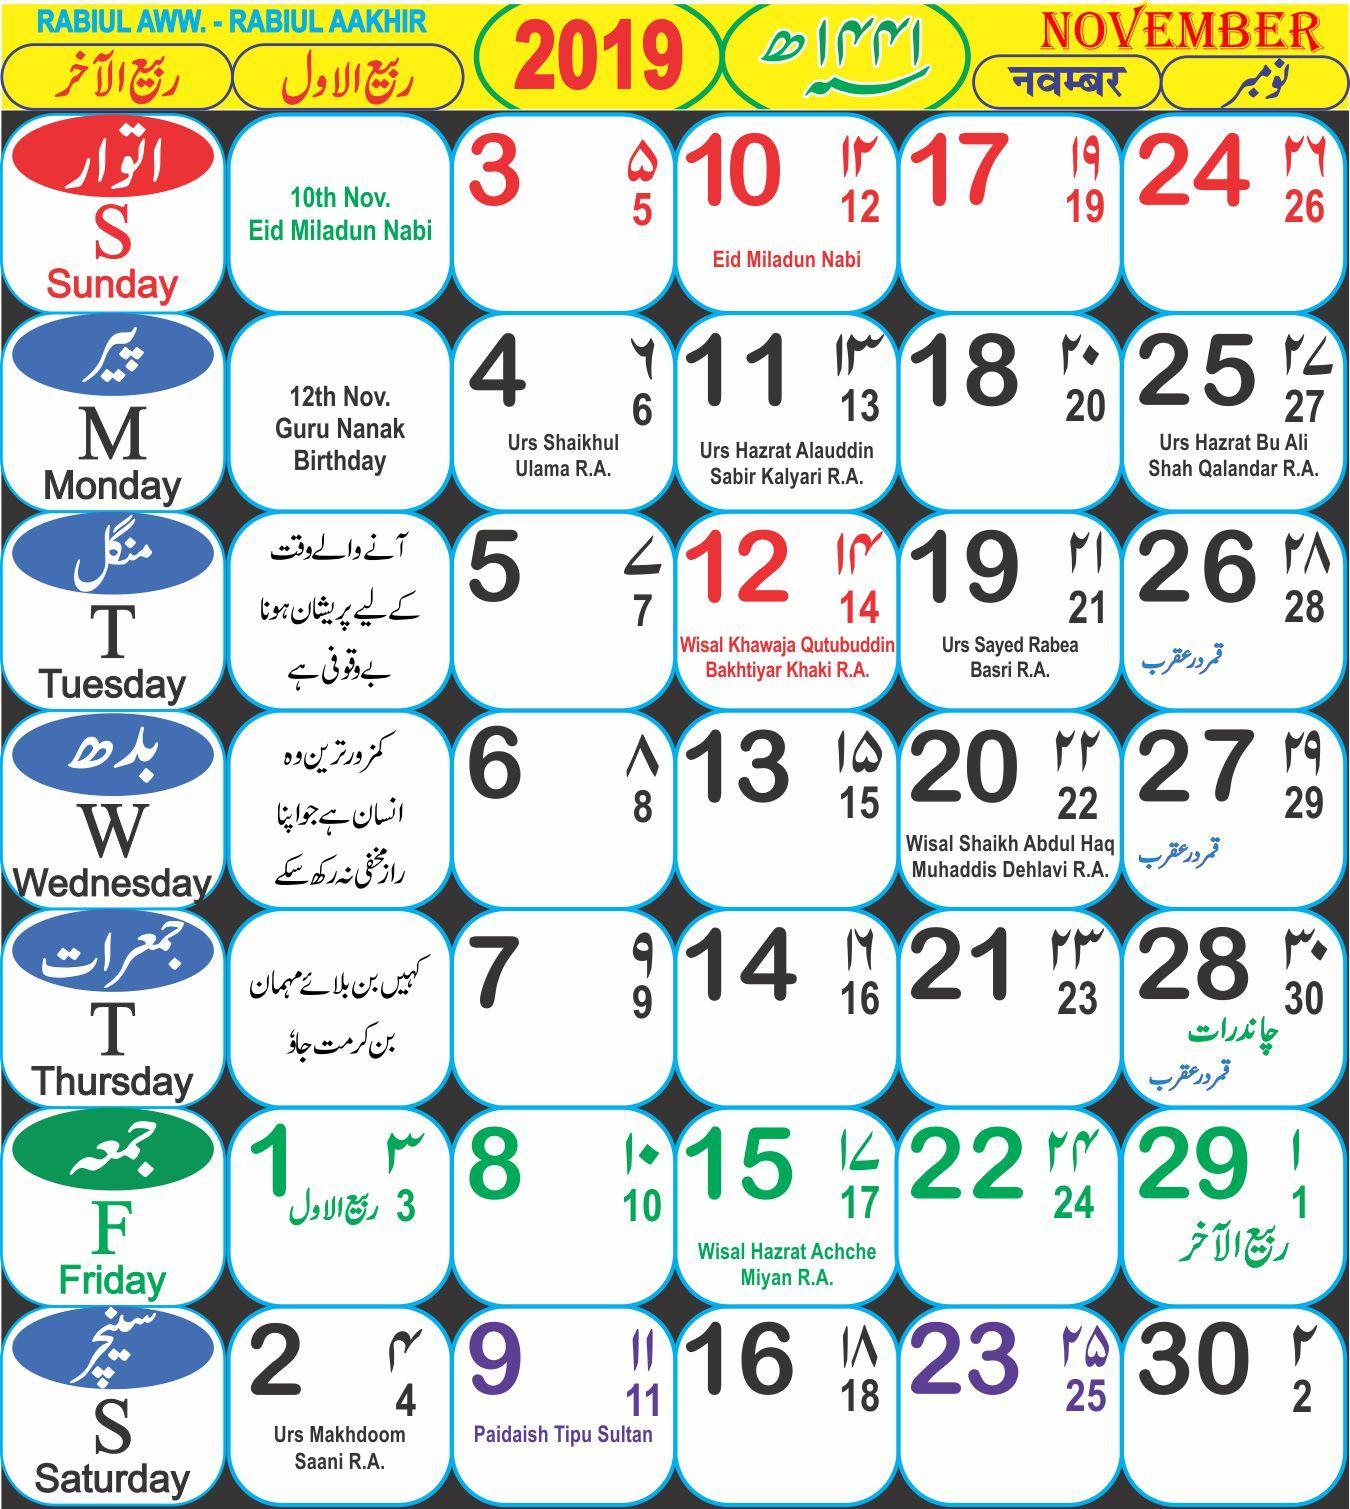 9 месяц календаря. Исламский календарь. Месяцы по мусульманскому календарю. Календарь Ислама. Название месяцев по мусульманскому календарю.